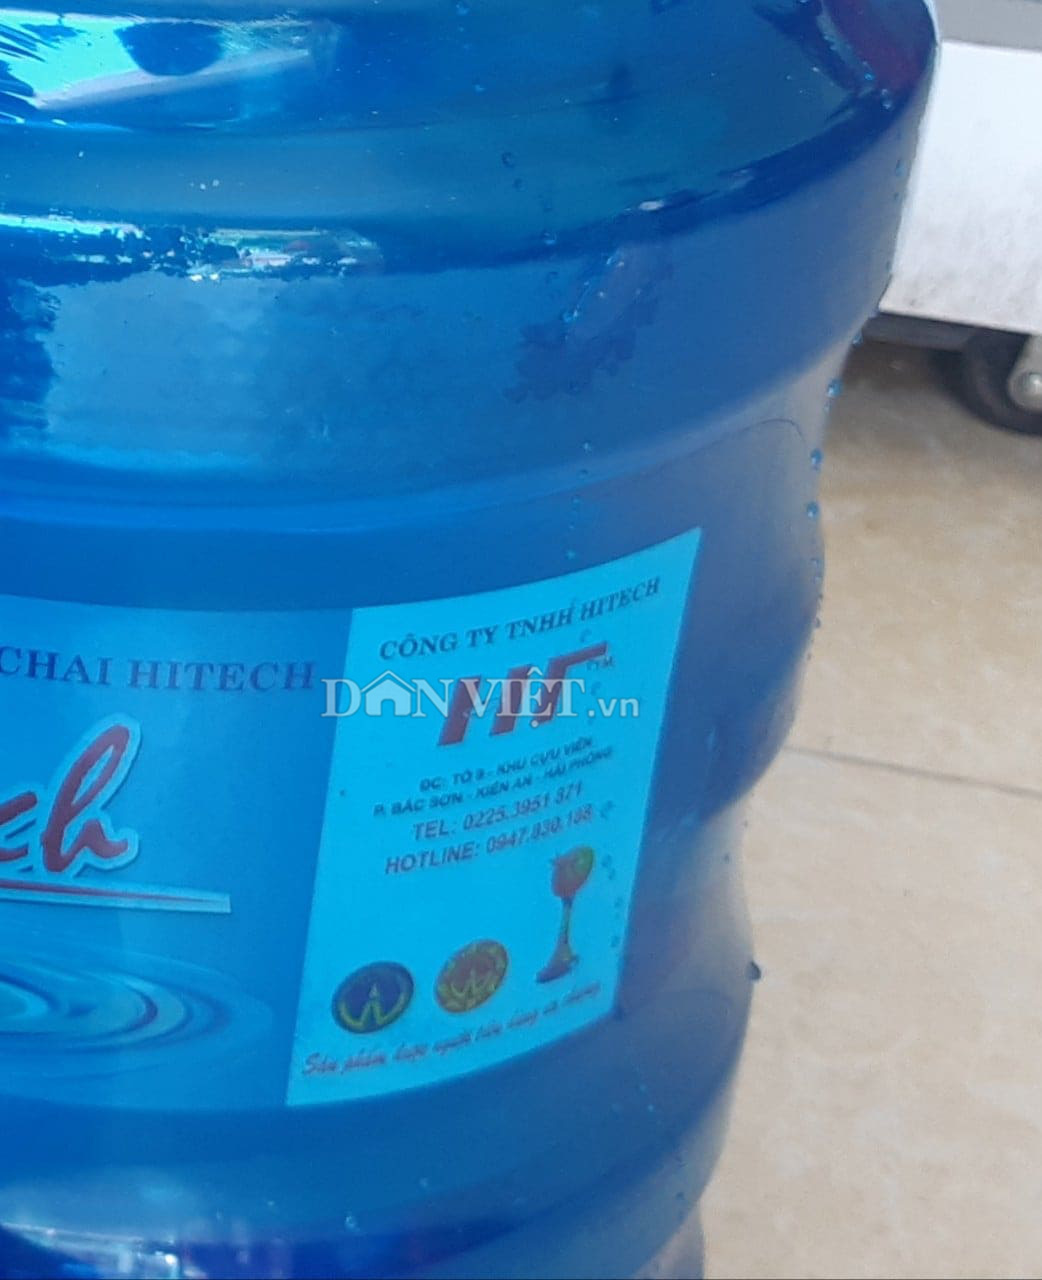 Hải Phòng: Xử phạt và buộc thu hồi toàn bộ sản phẩm nước đóng bình của Công ty TNHH HITECH  - Ảnh 1.